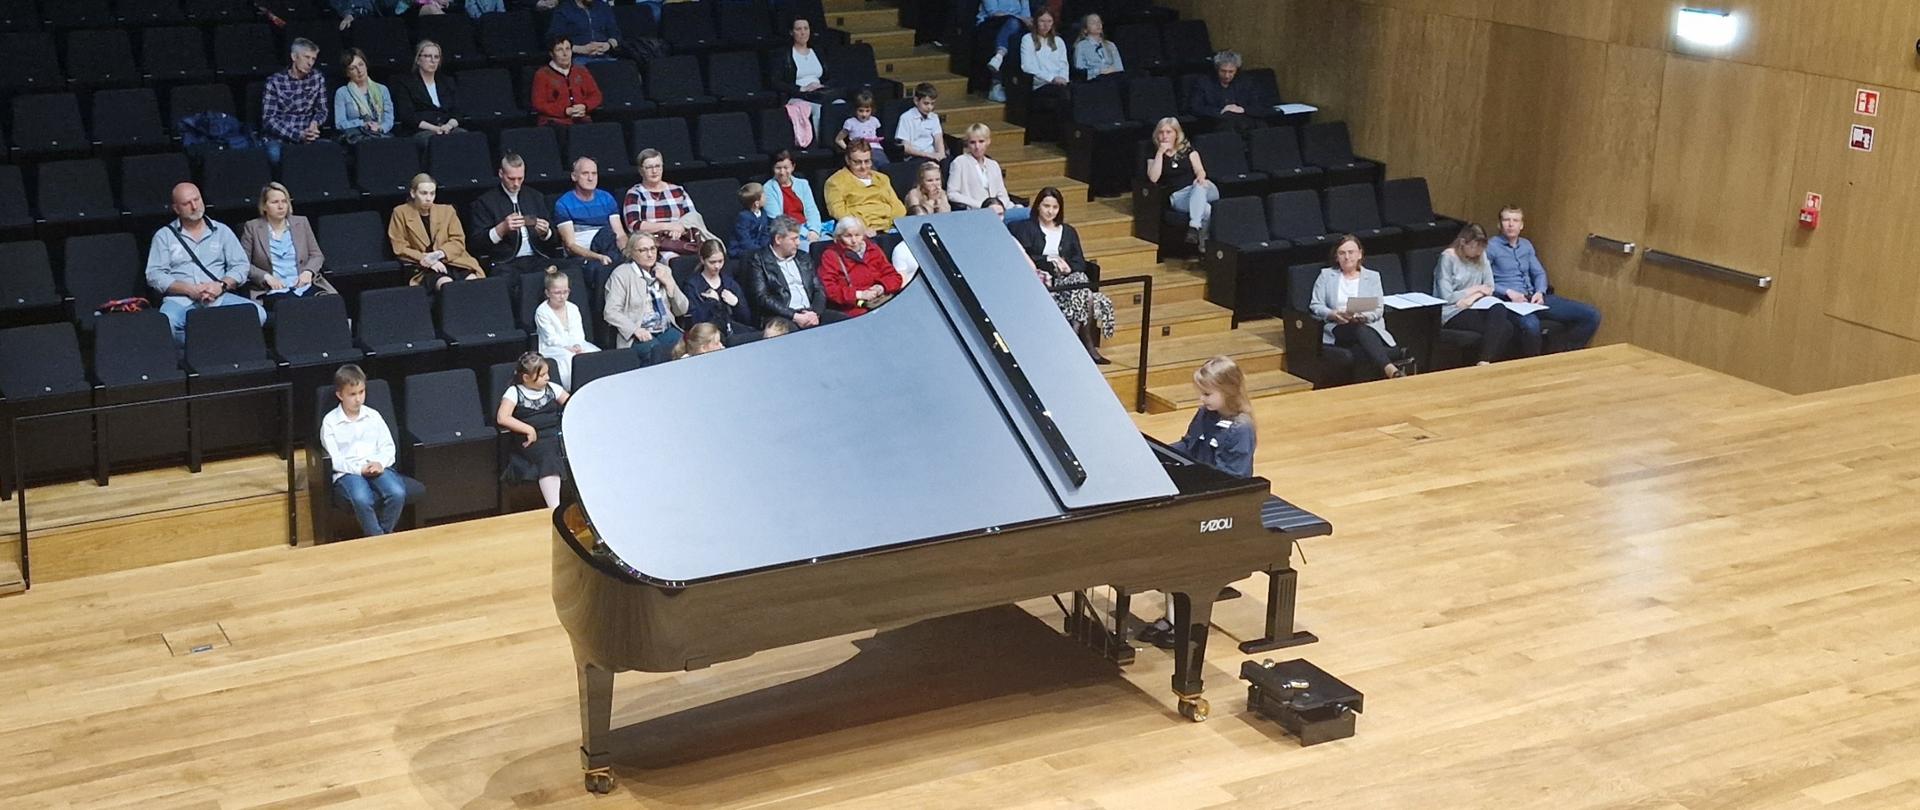 Dziewczynka gra na fortepianie Fazioli, w tle widać publiczność na widowni.